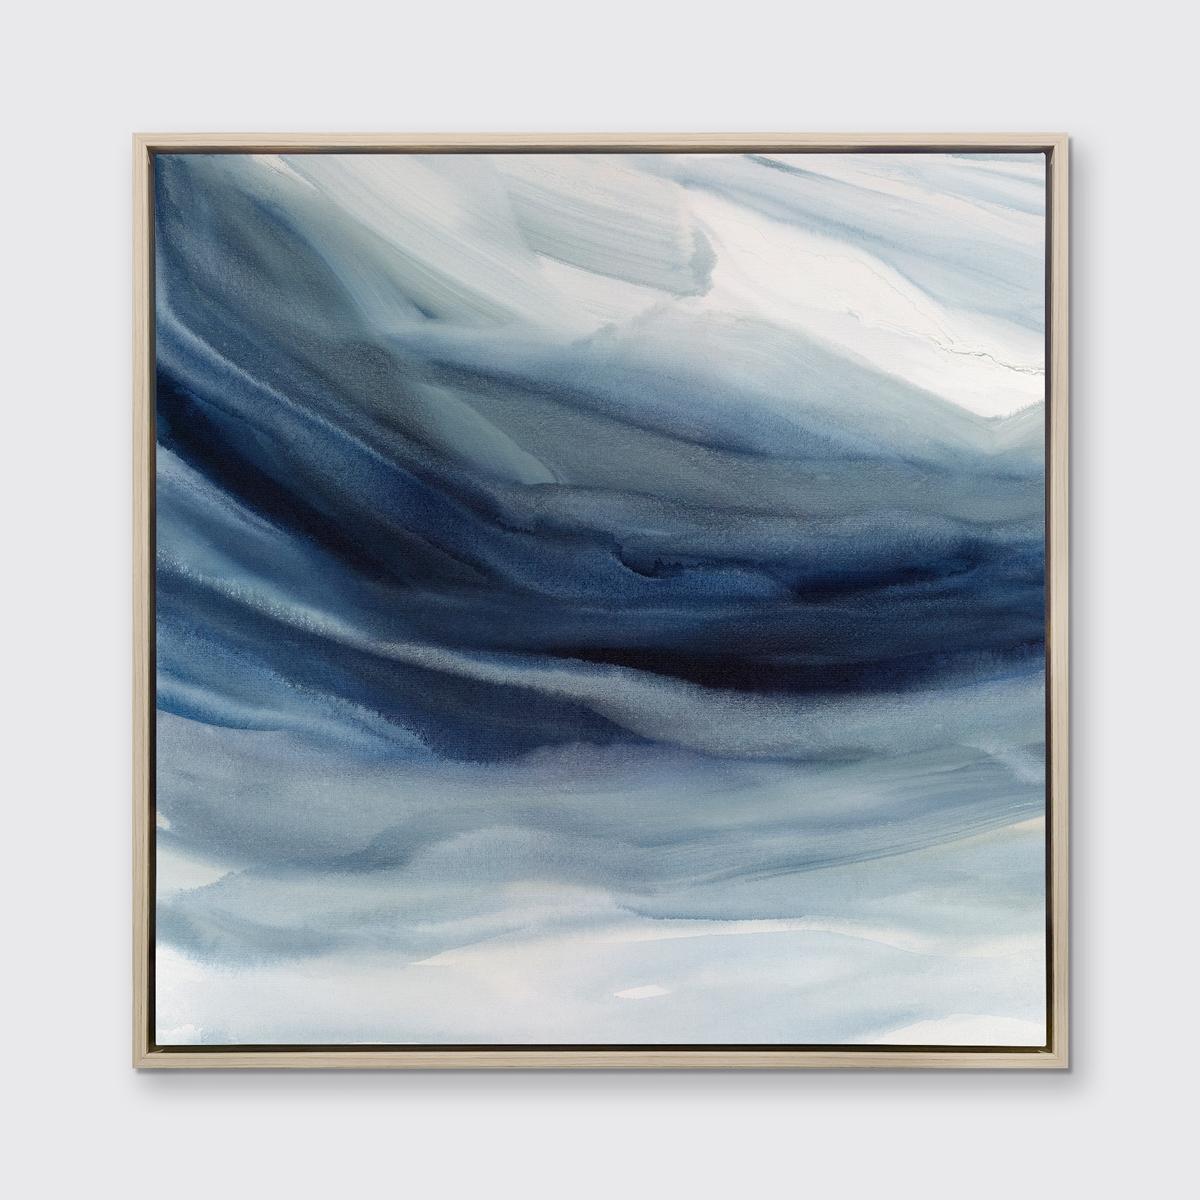 Dieser zeitgenössische Druck in limitierter Auflage von Teodora Guererra zeichnet sich durch kühle Blau- und Weißtöne und eine abstrakte Küstenästhetik aus. Dieser Druck passt hervorragend zu Indigo Sea II - einem Druck in limitierter Auflage